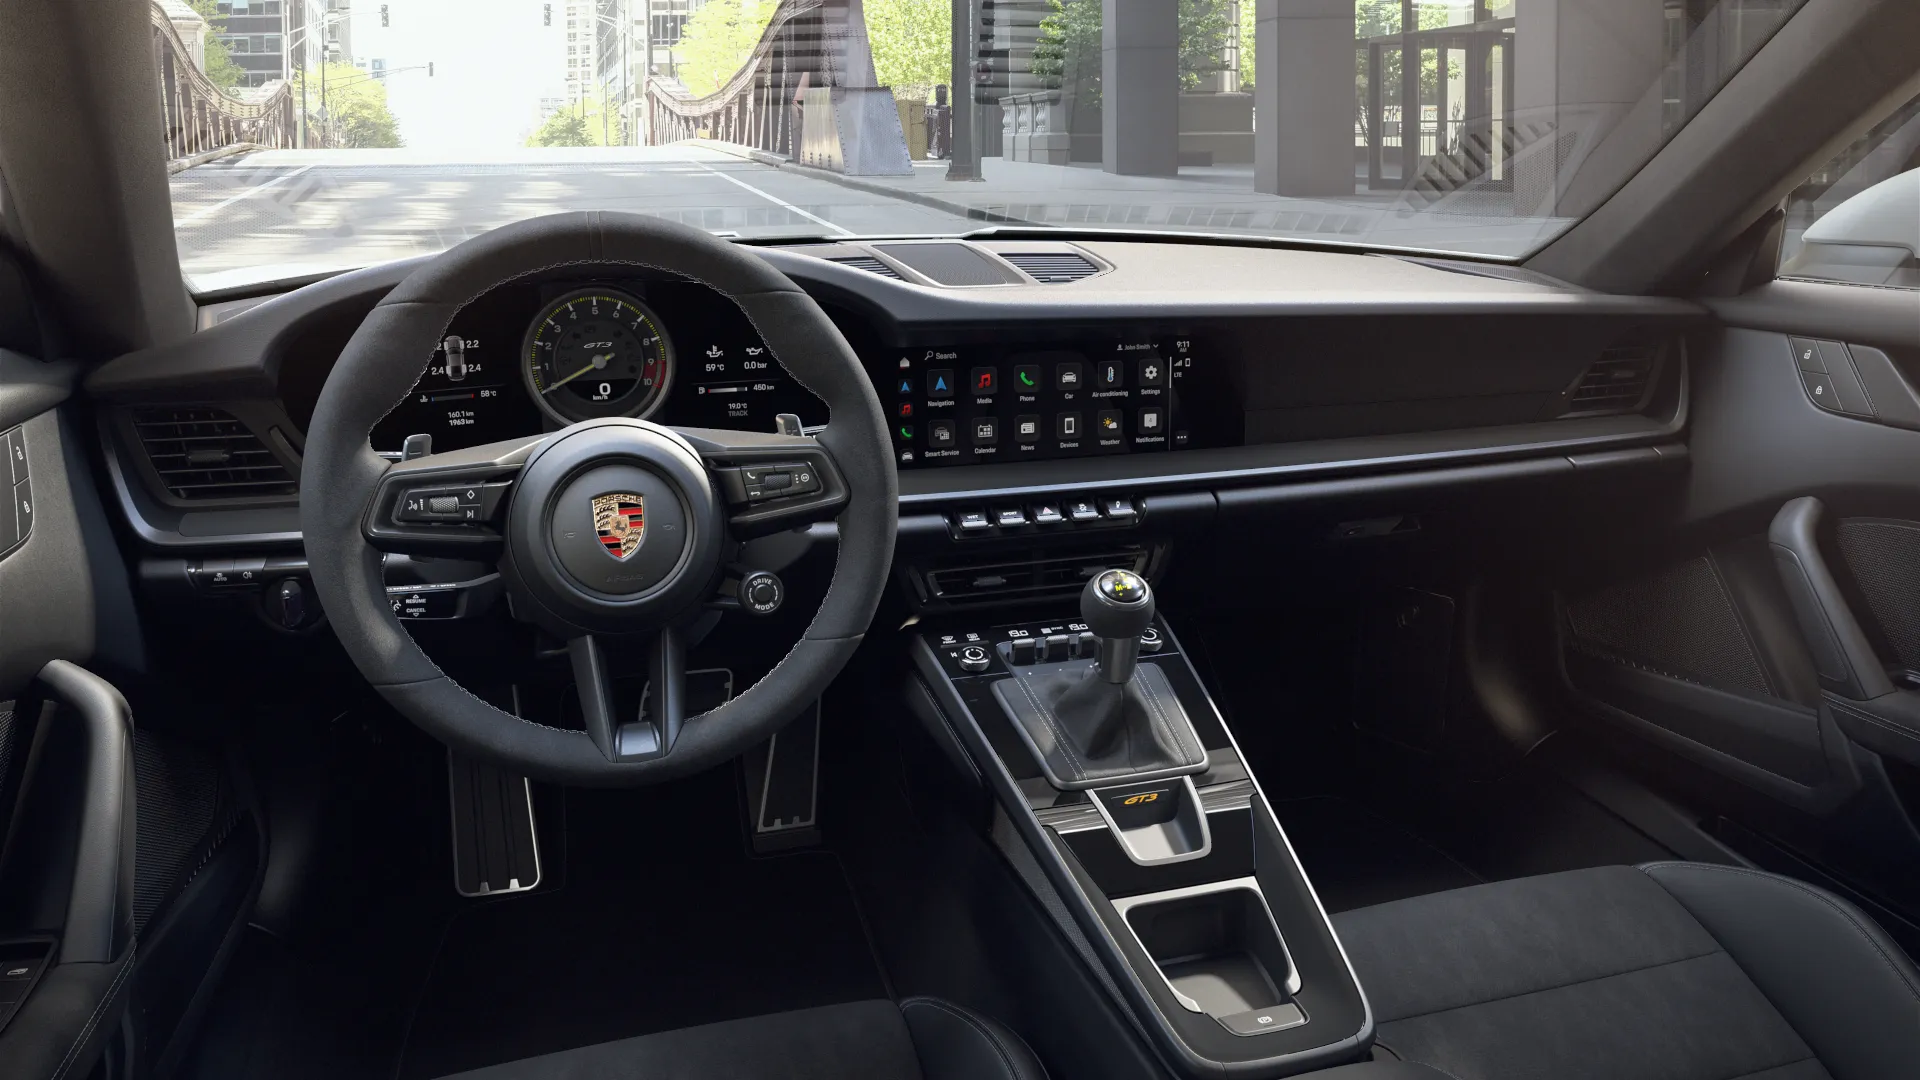 Innenansicht des 911 GT3